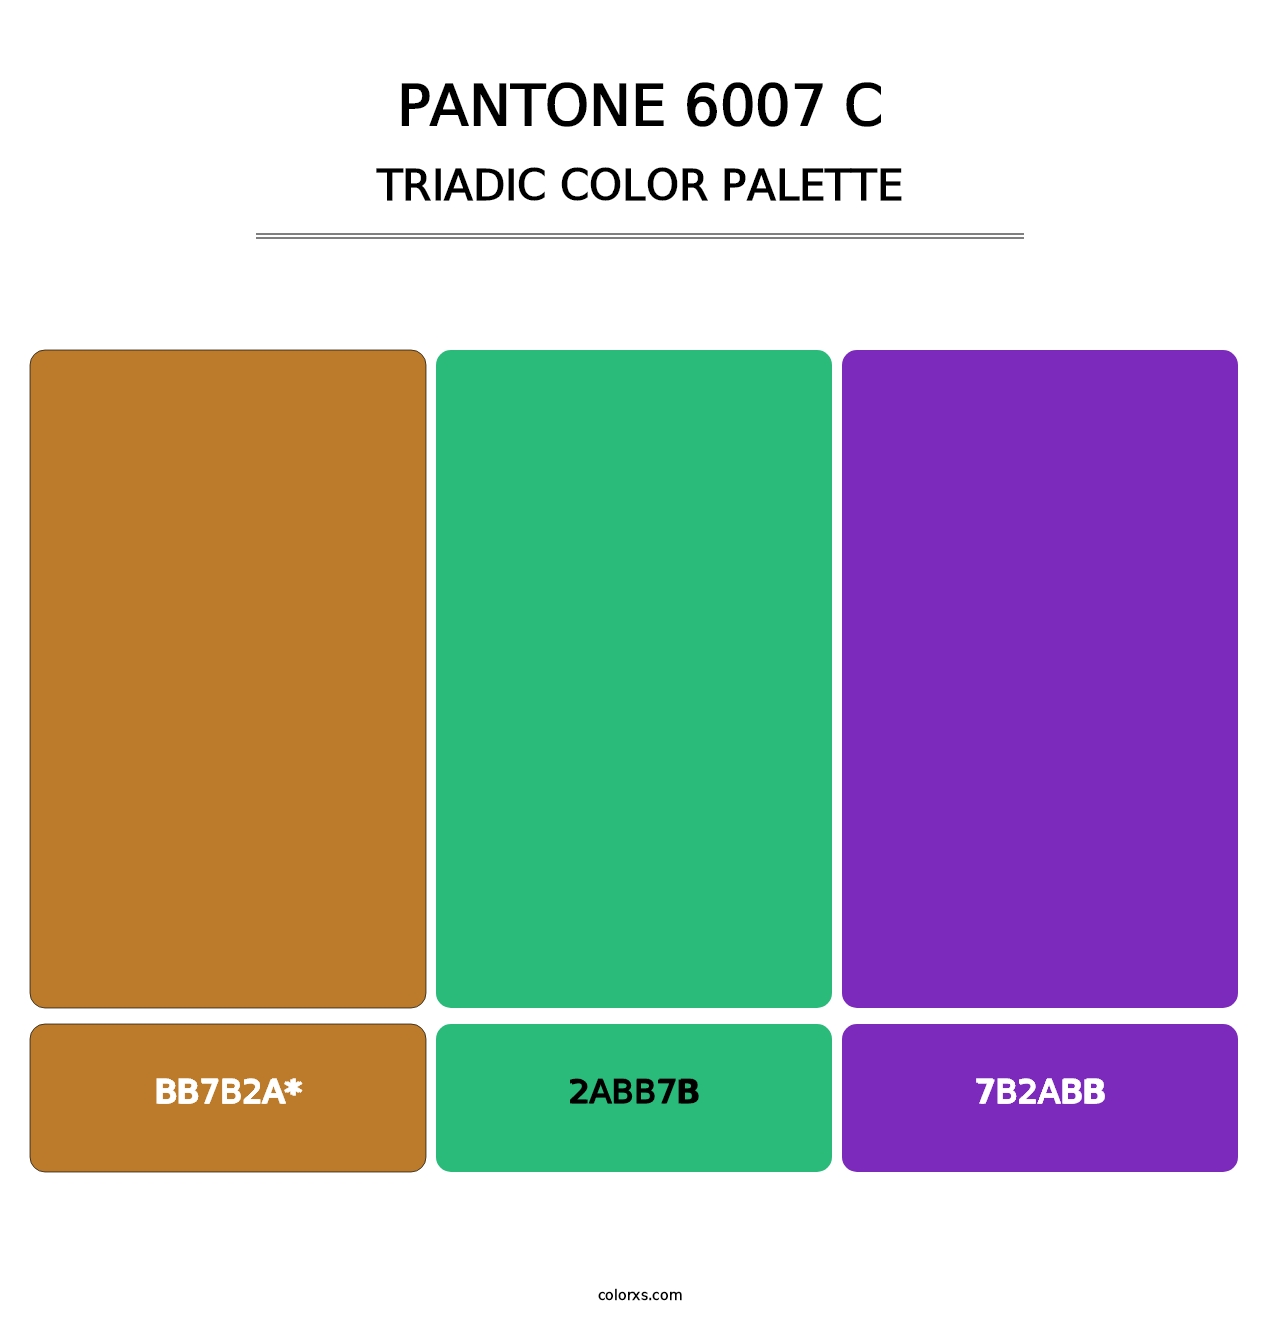 PANTONE 6007 C - Triadic Color Palette